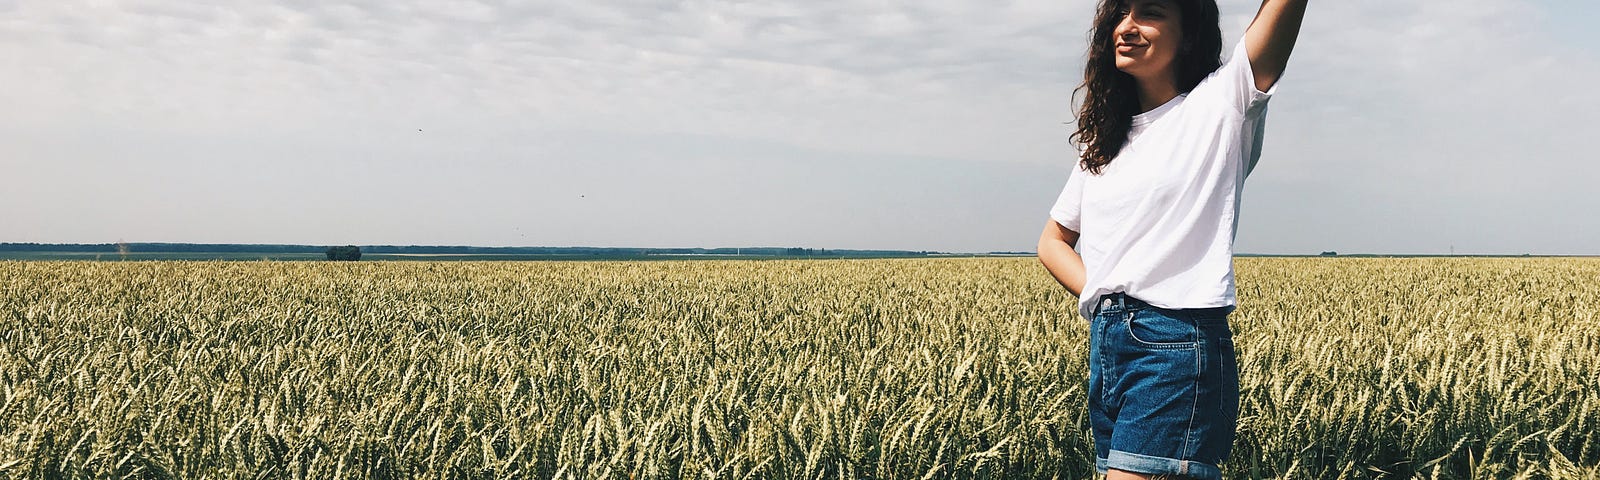 A girl in a field of grain. Ukraine is often called the ‘Breadbasket of Europe.’